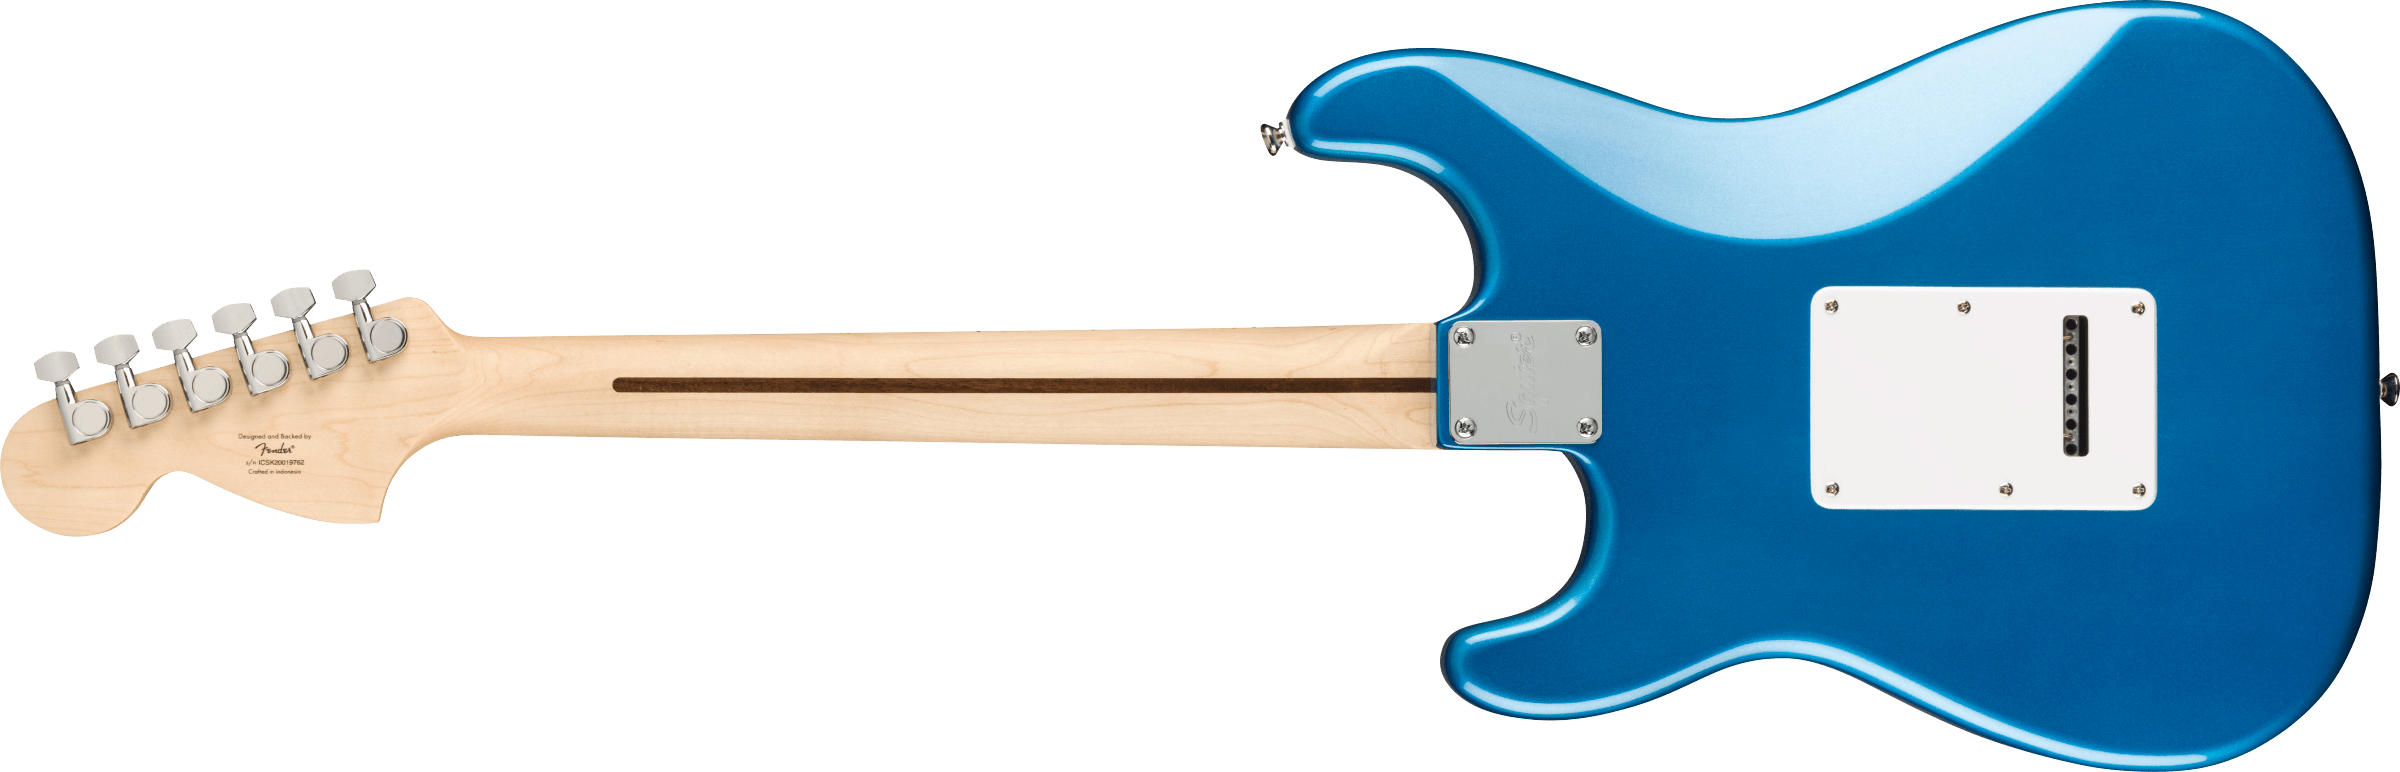 Squier Strat Affinity Hss Pack +fender Frontman 15g 2021 Trem Mn - Lake Placid Blue - Elektrische gitaar set - Variation 2